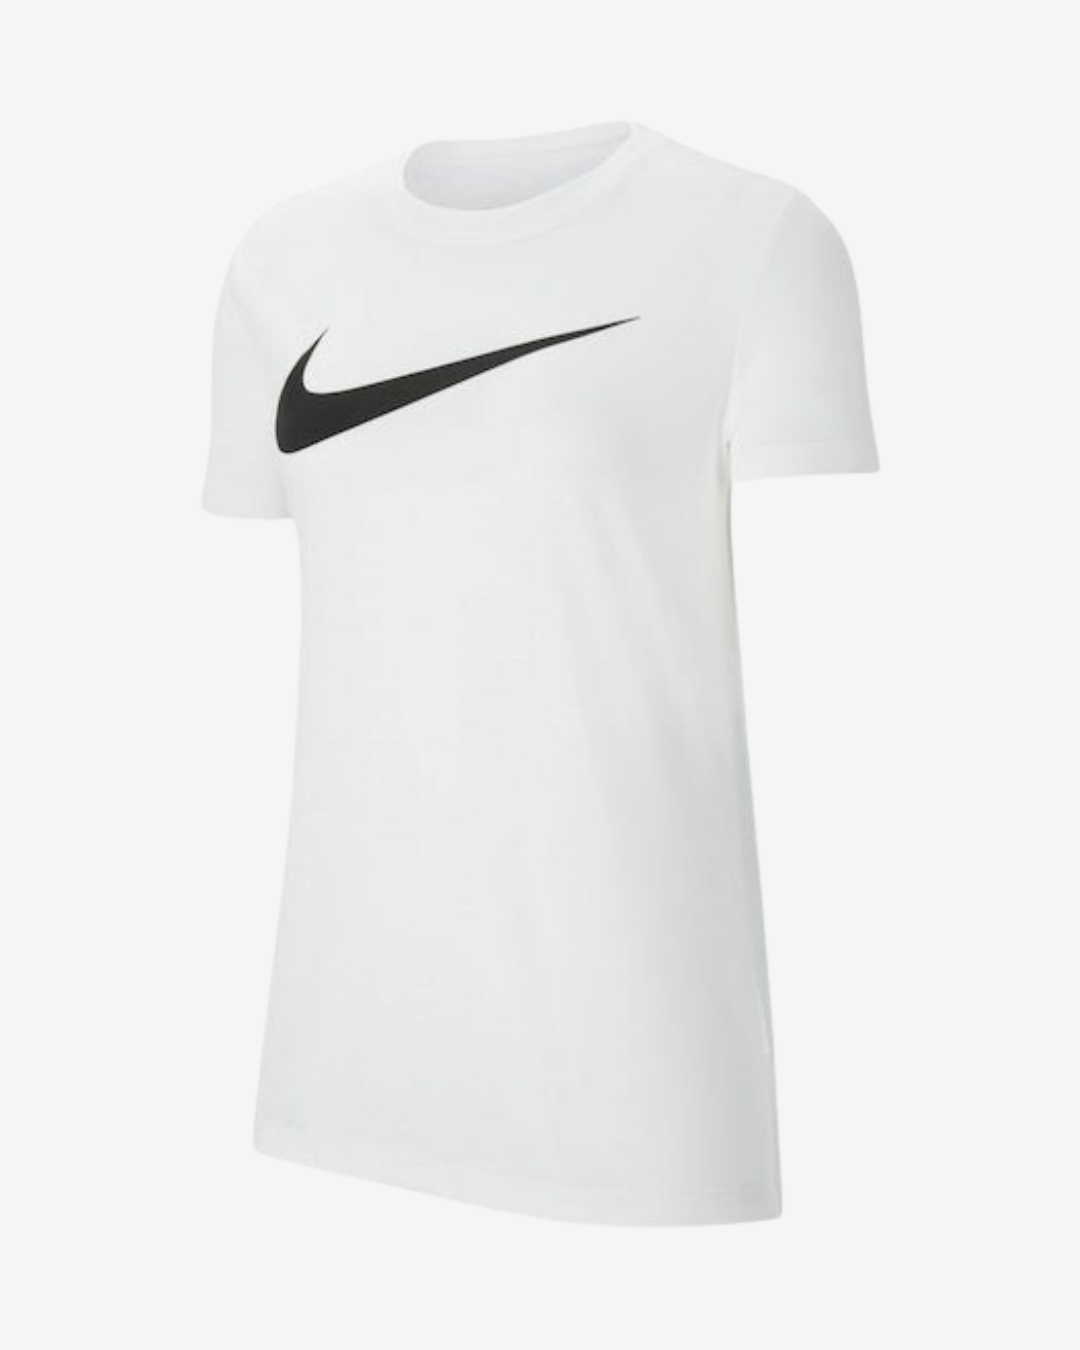 Billede af Nike Dri-fit park 20 dame t-shirt - Hvid - Str. XS - Modish.dk